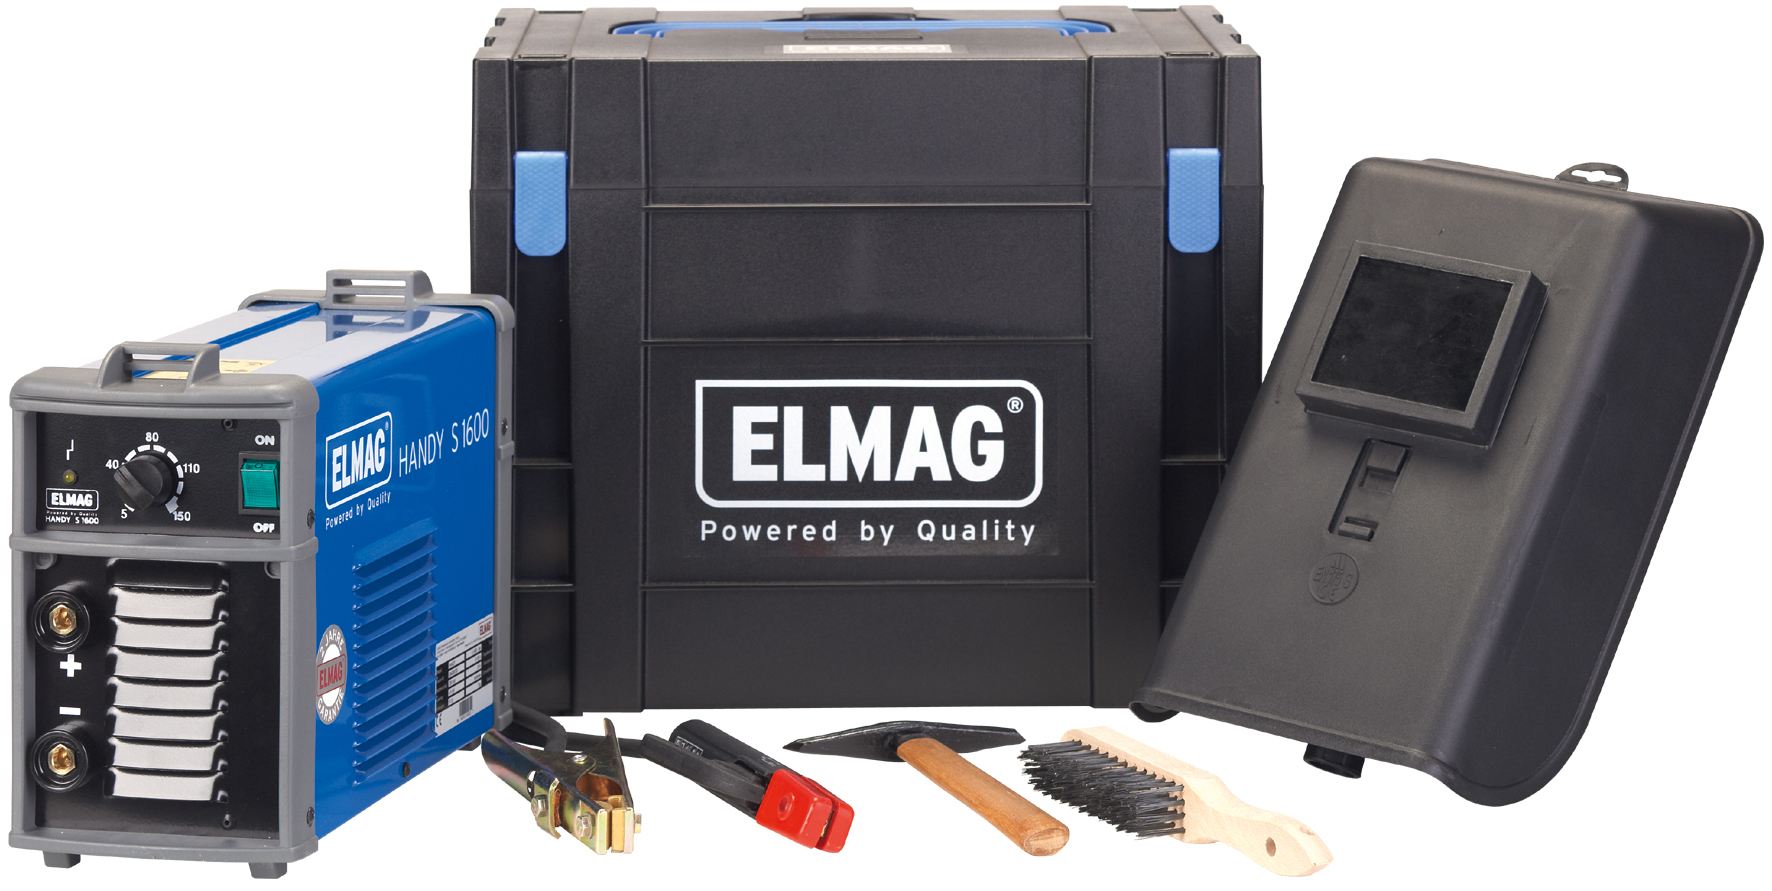 ELMAG Schweißinverter PUMA S2000 Power-Set, 10-180A, Ø1,6-4,0mm Elektroden, 230V/16A, 6,6kg